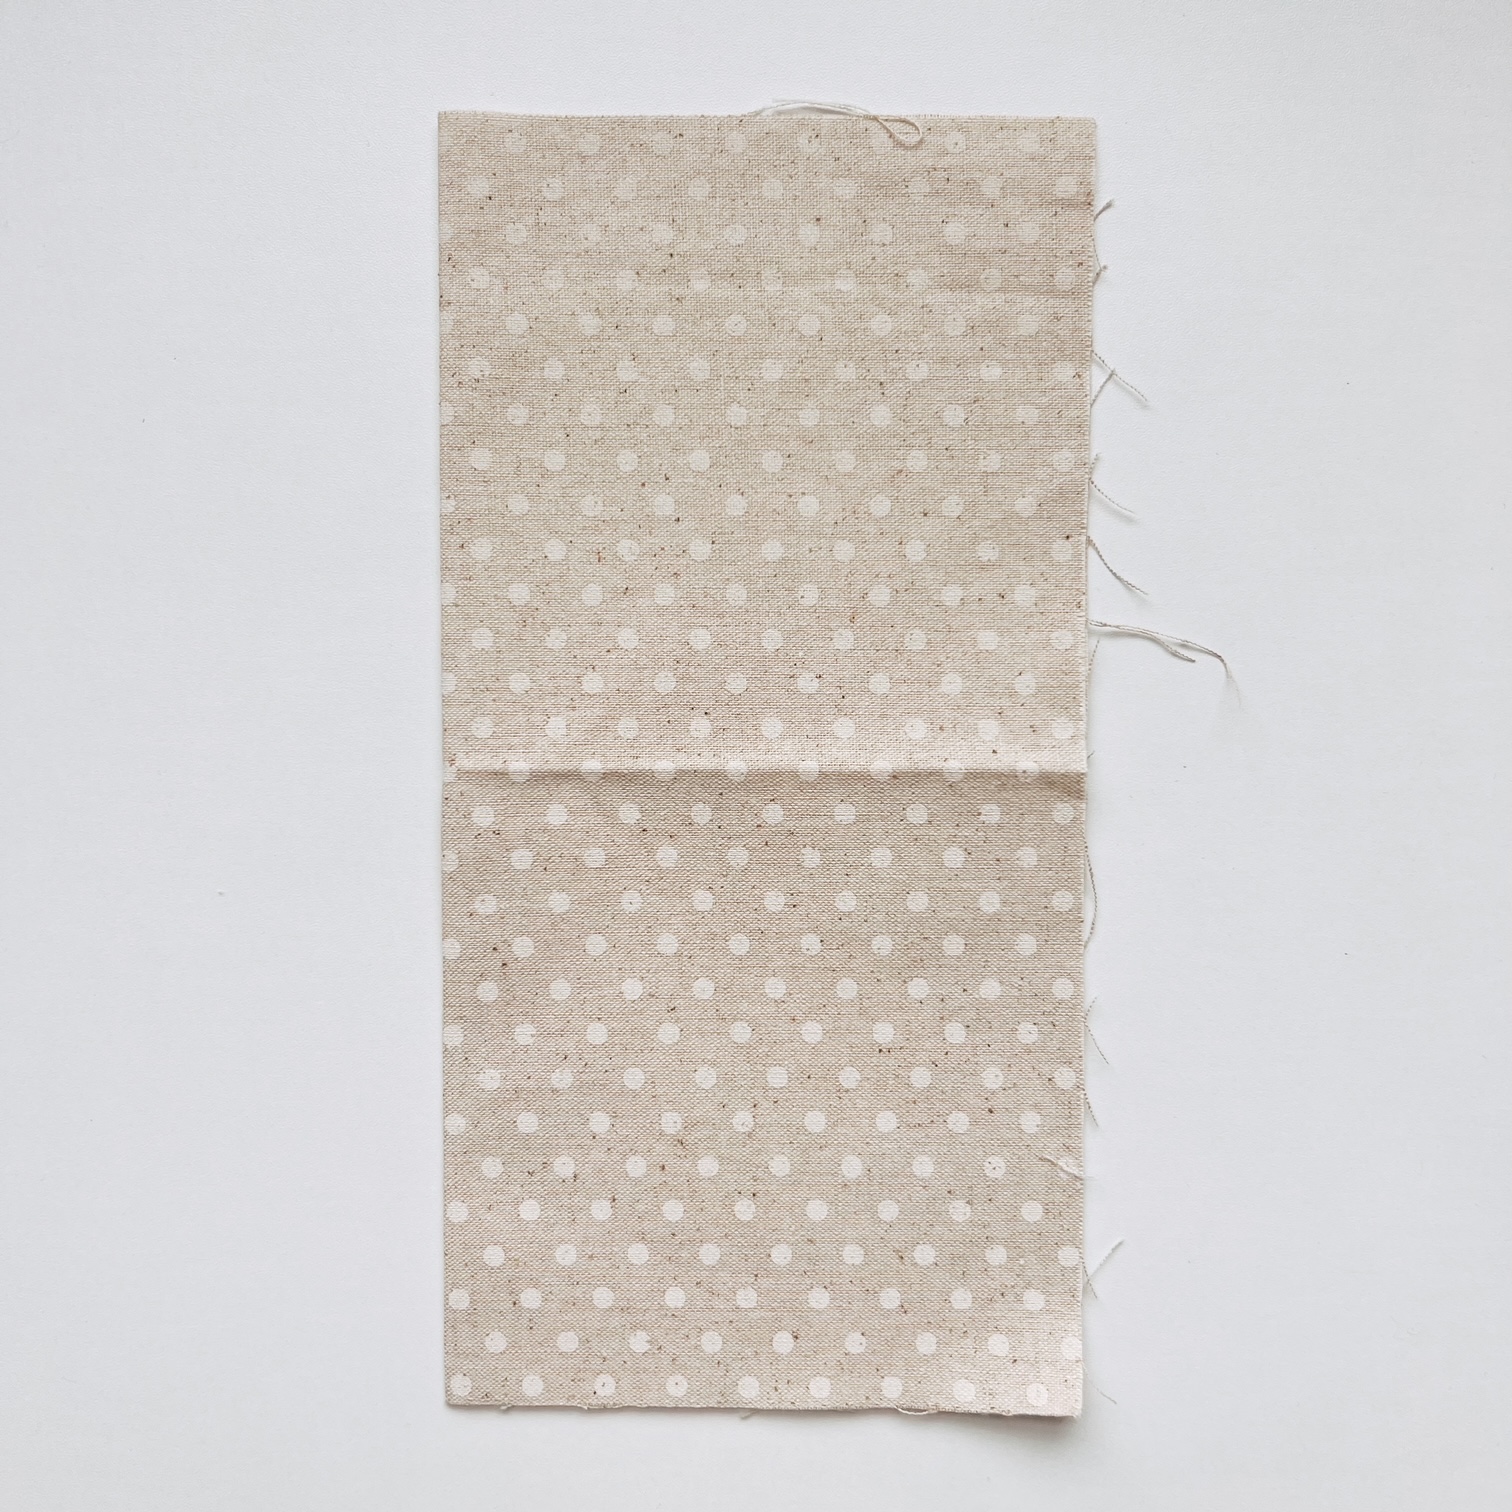 10 x 10″ cotton square folding